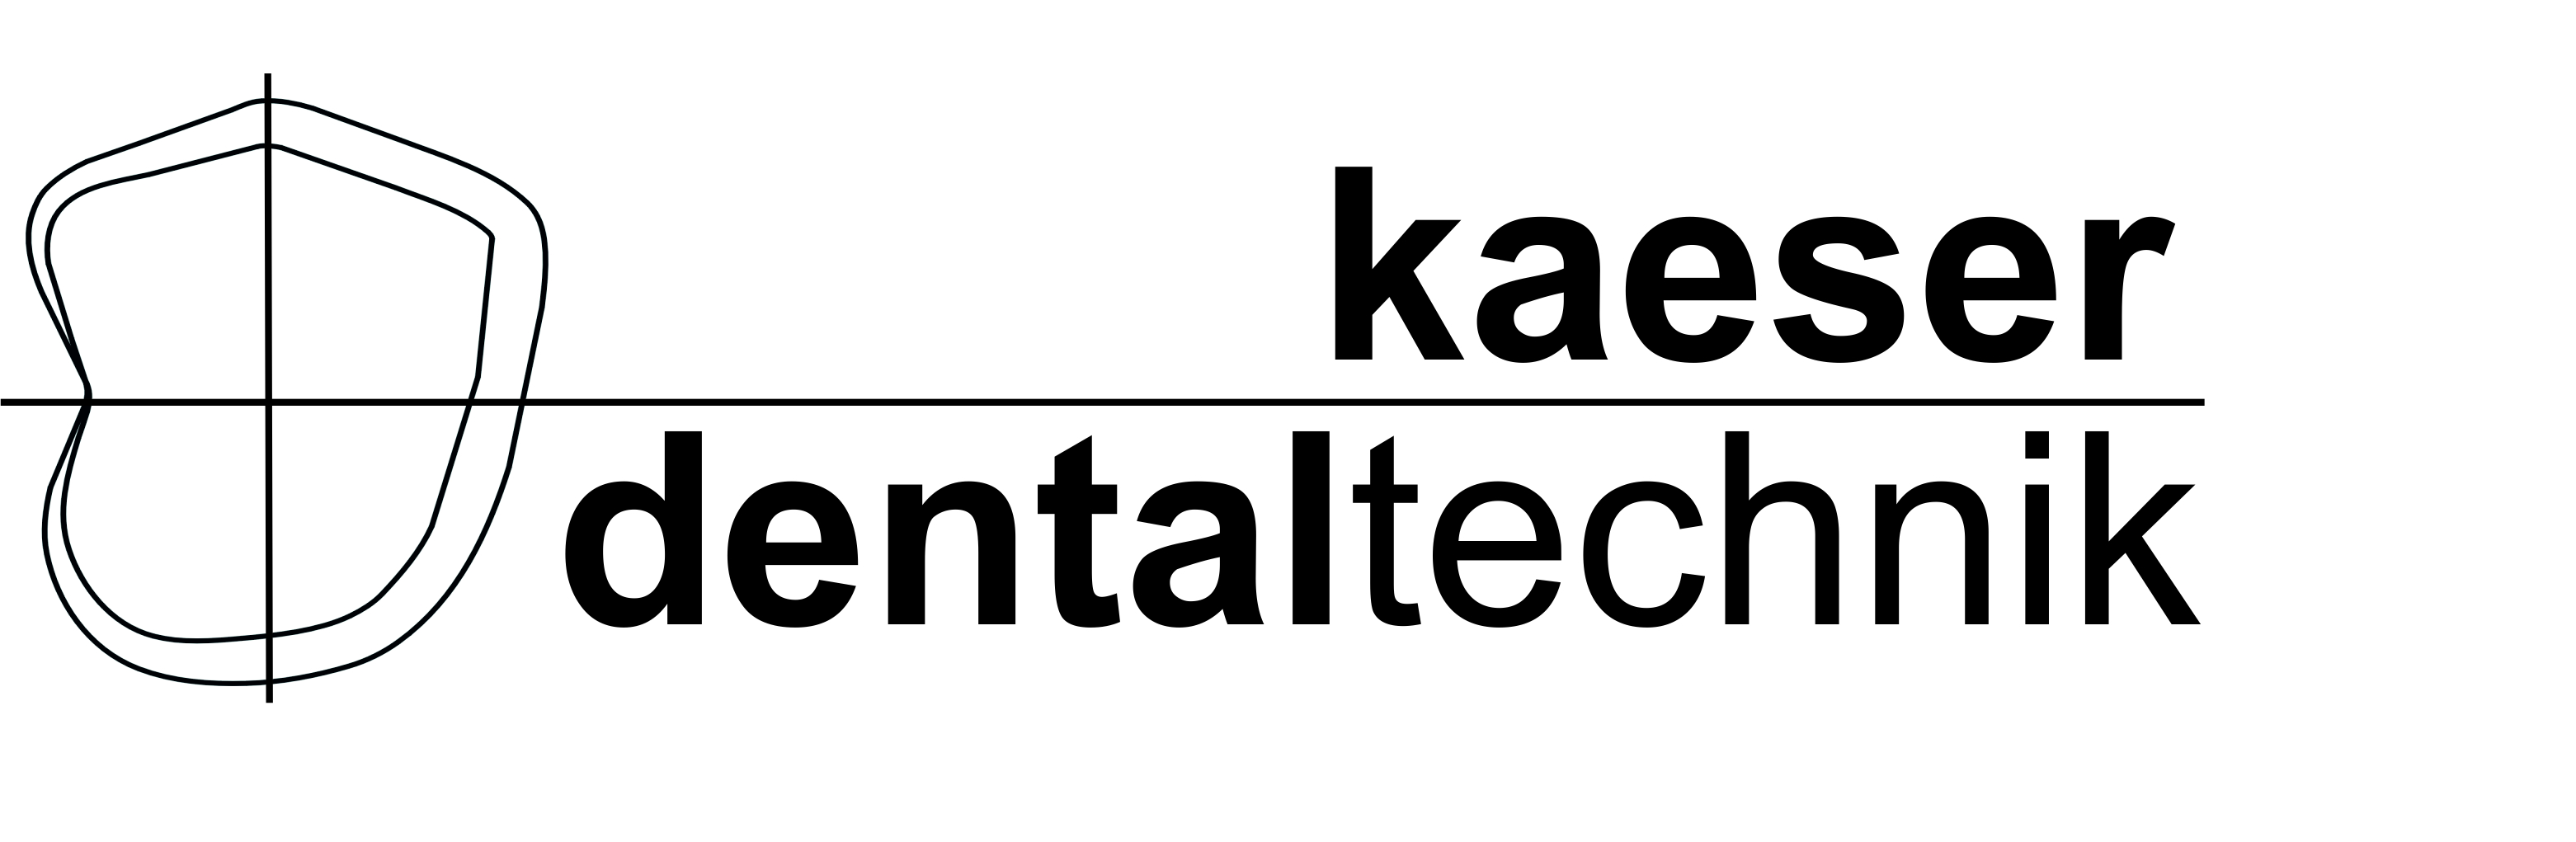 Kaeser Dentaltechnik GmbH